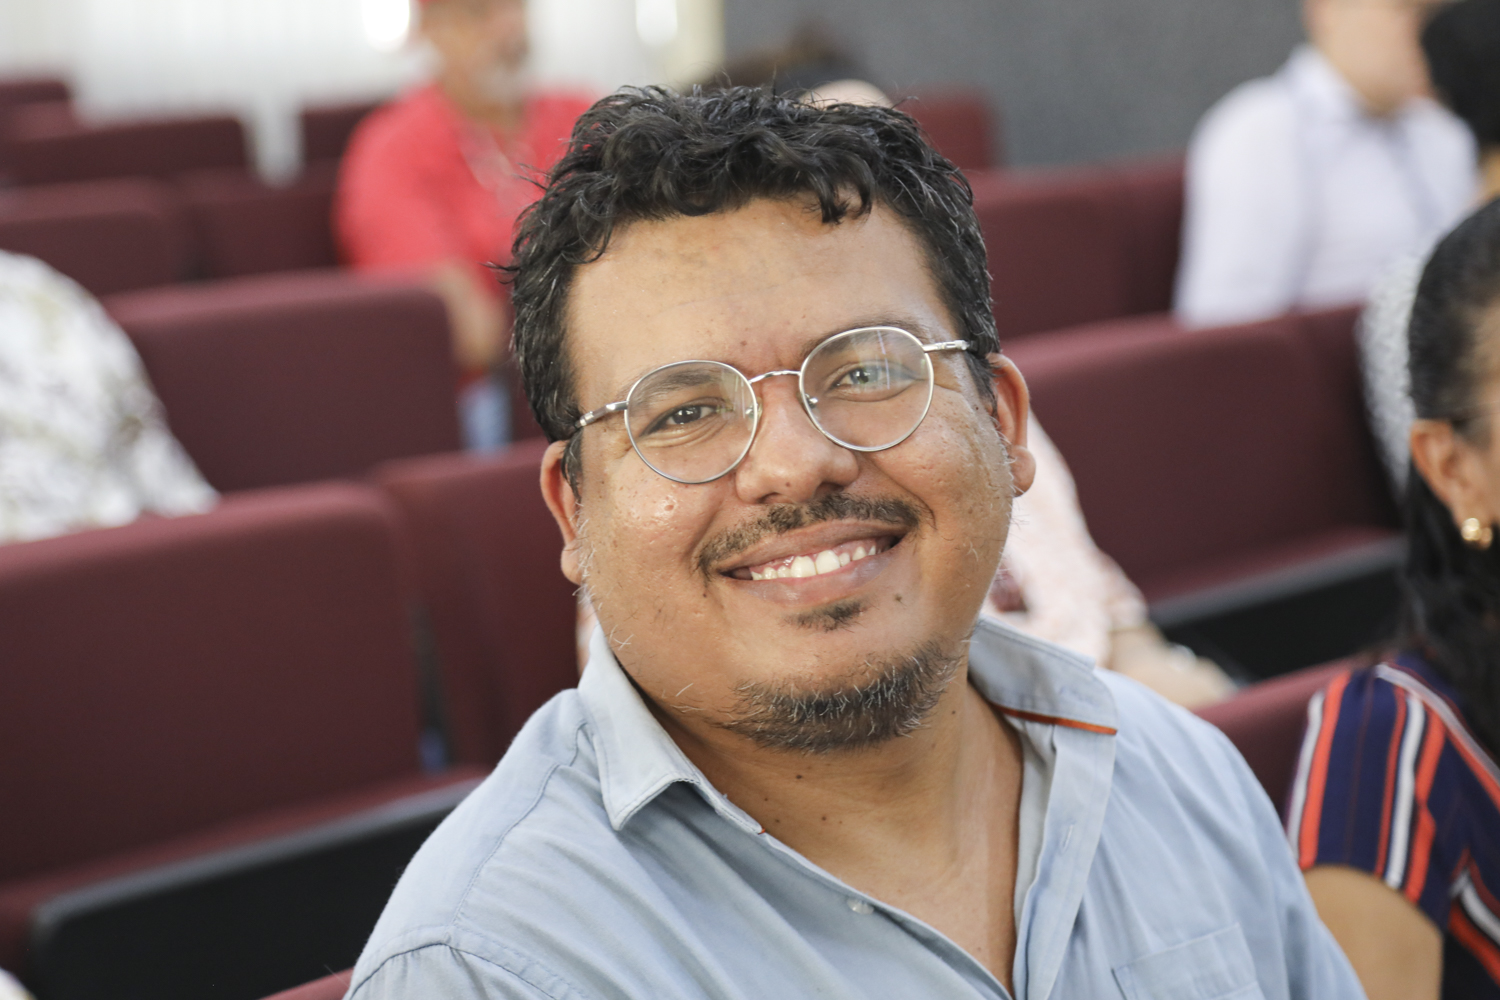 Francisco Diemerson, presidente da Academia de Letras de Aracaju, uma das instituições organizadoras do evento.